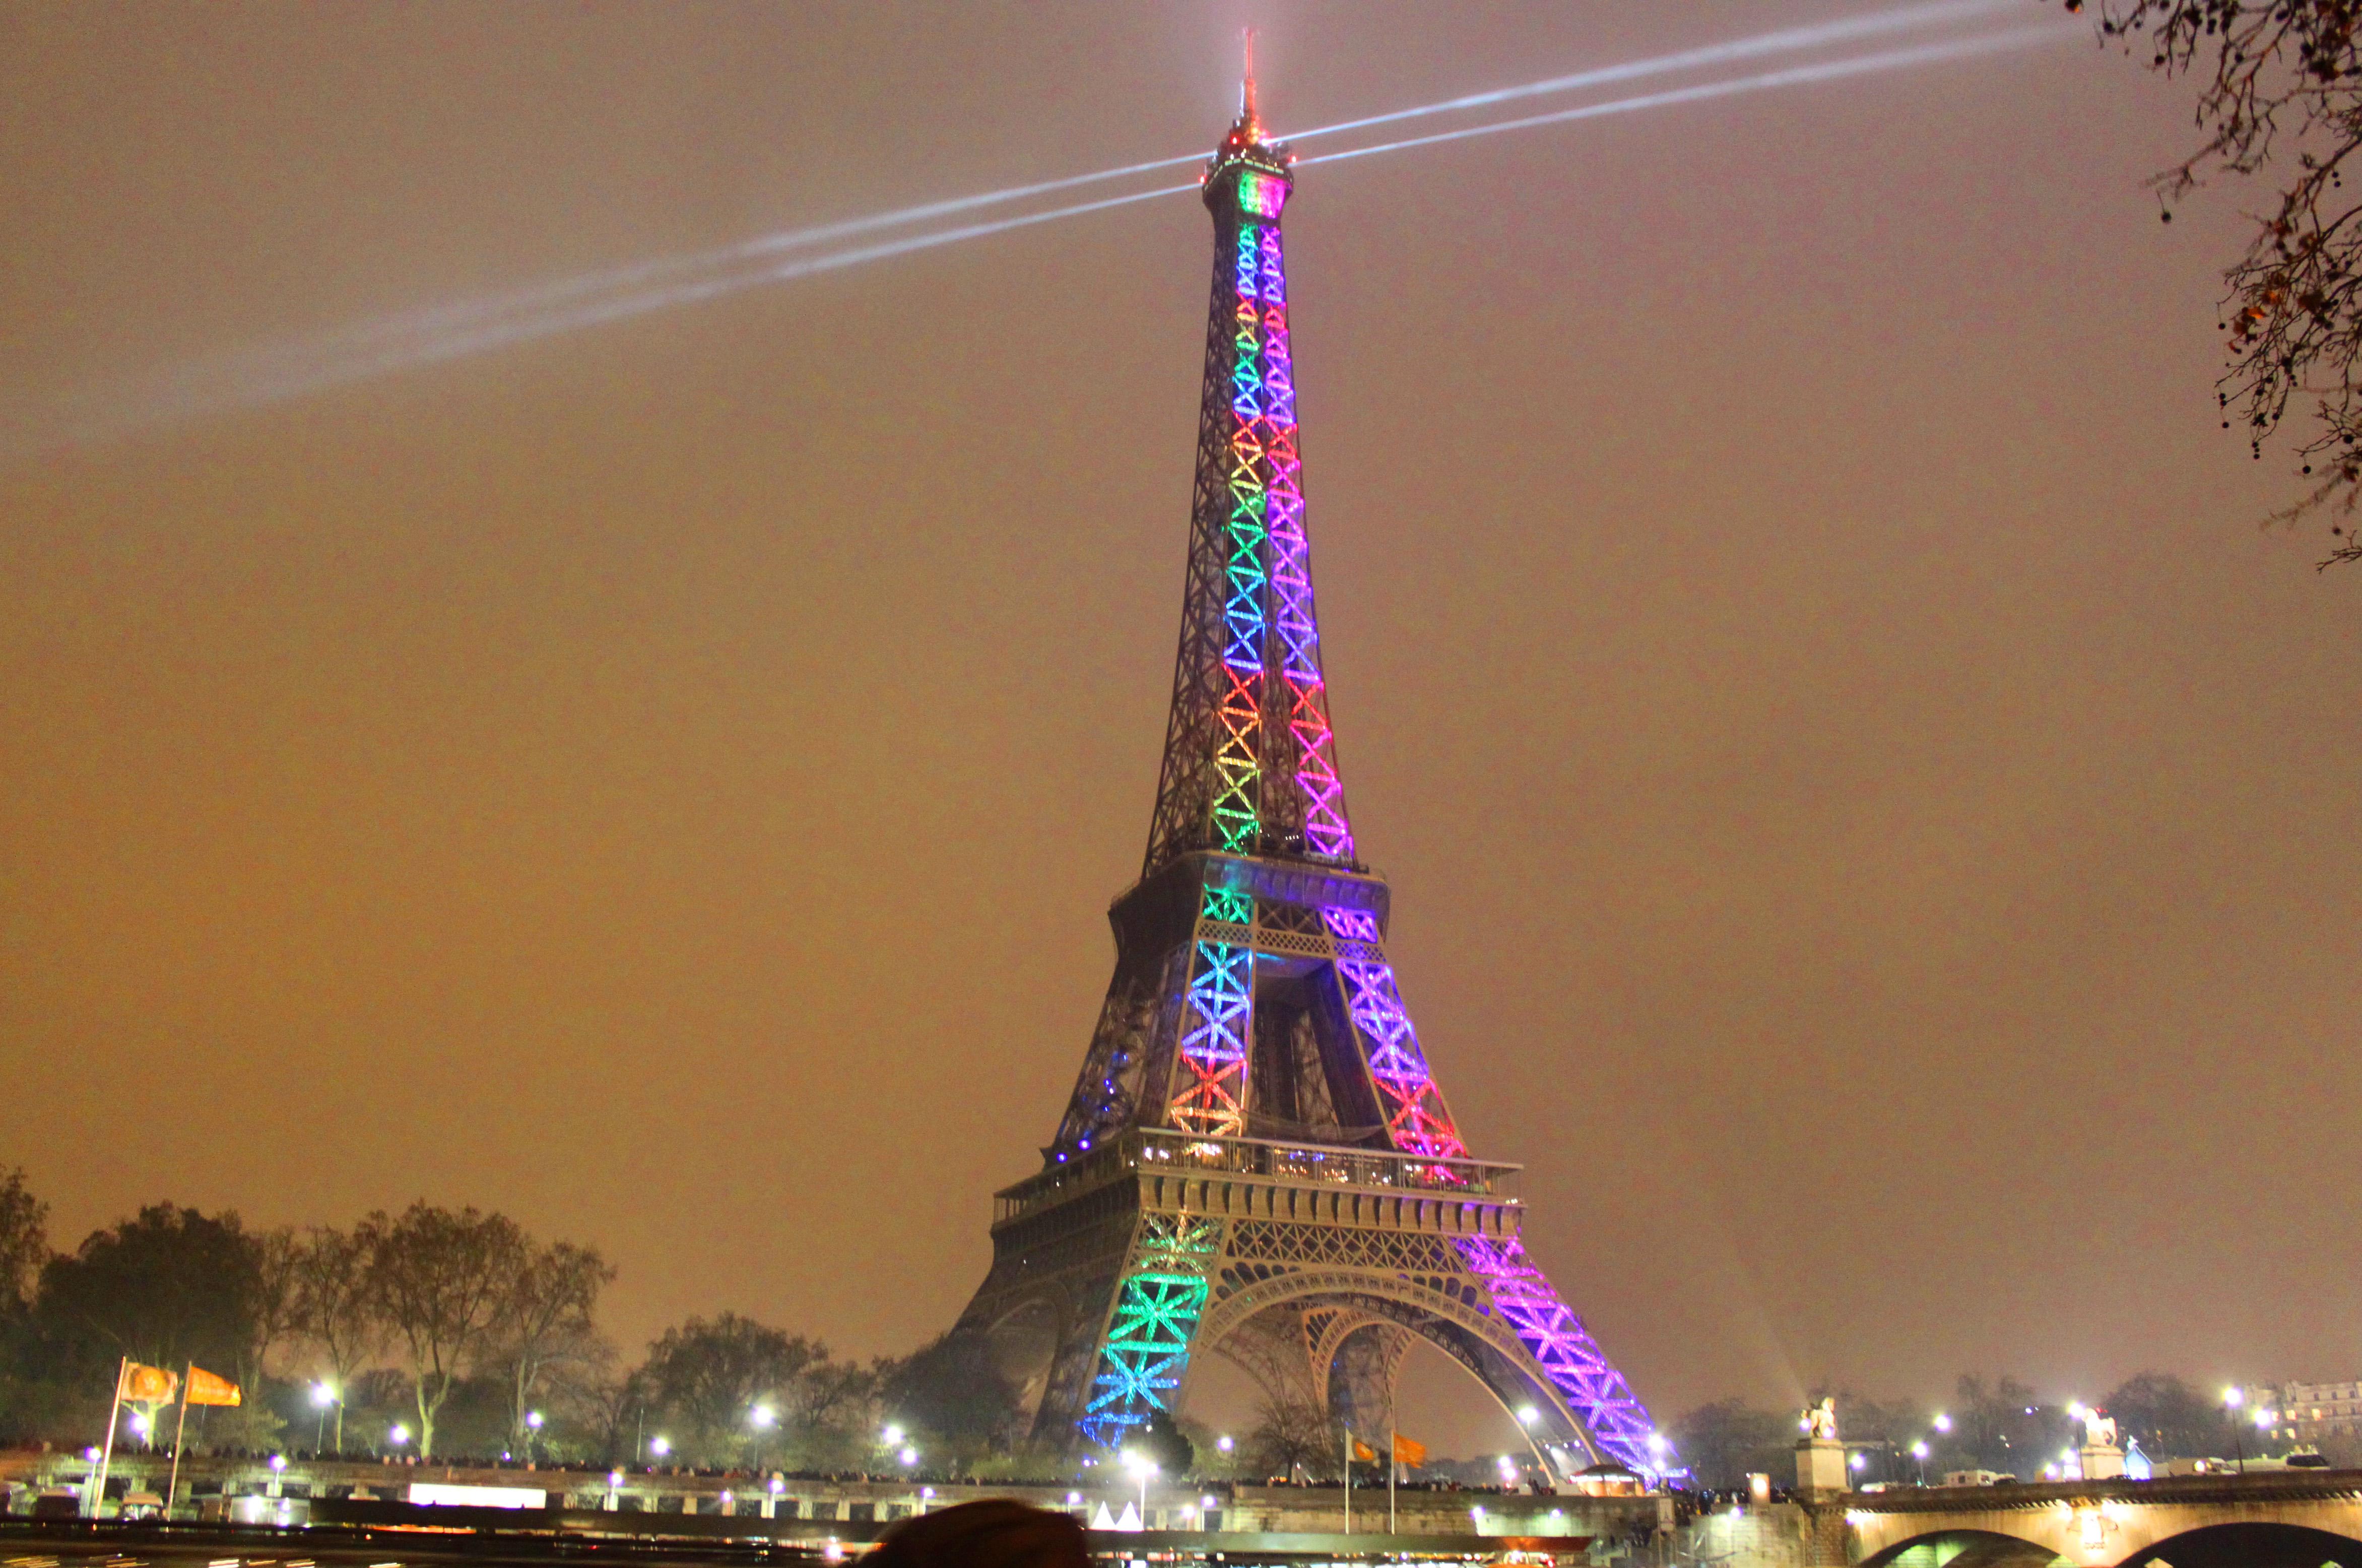 Osteggiata Discussa Amata E Odiata La Storia Della Tour Eiffel Simbolo Per Antonomasia Di Parigi